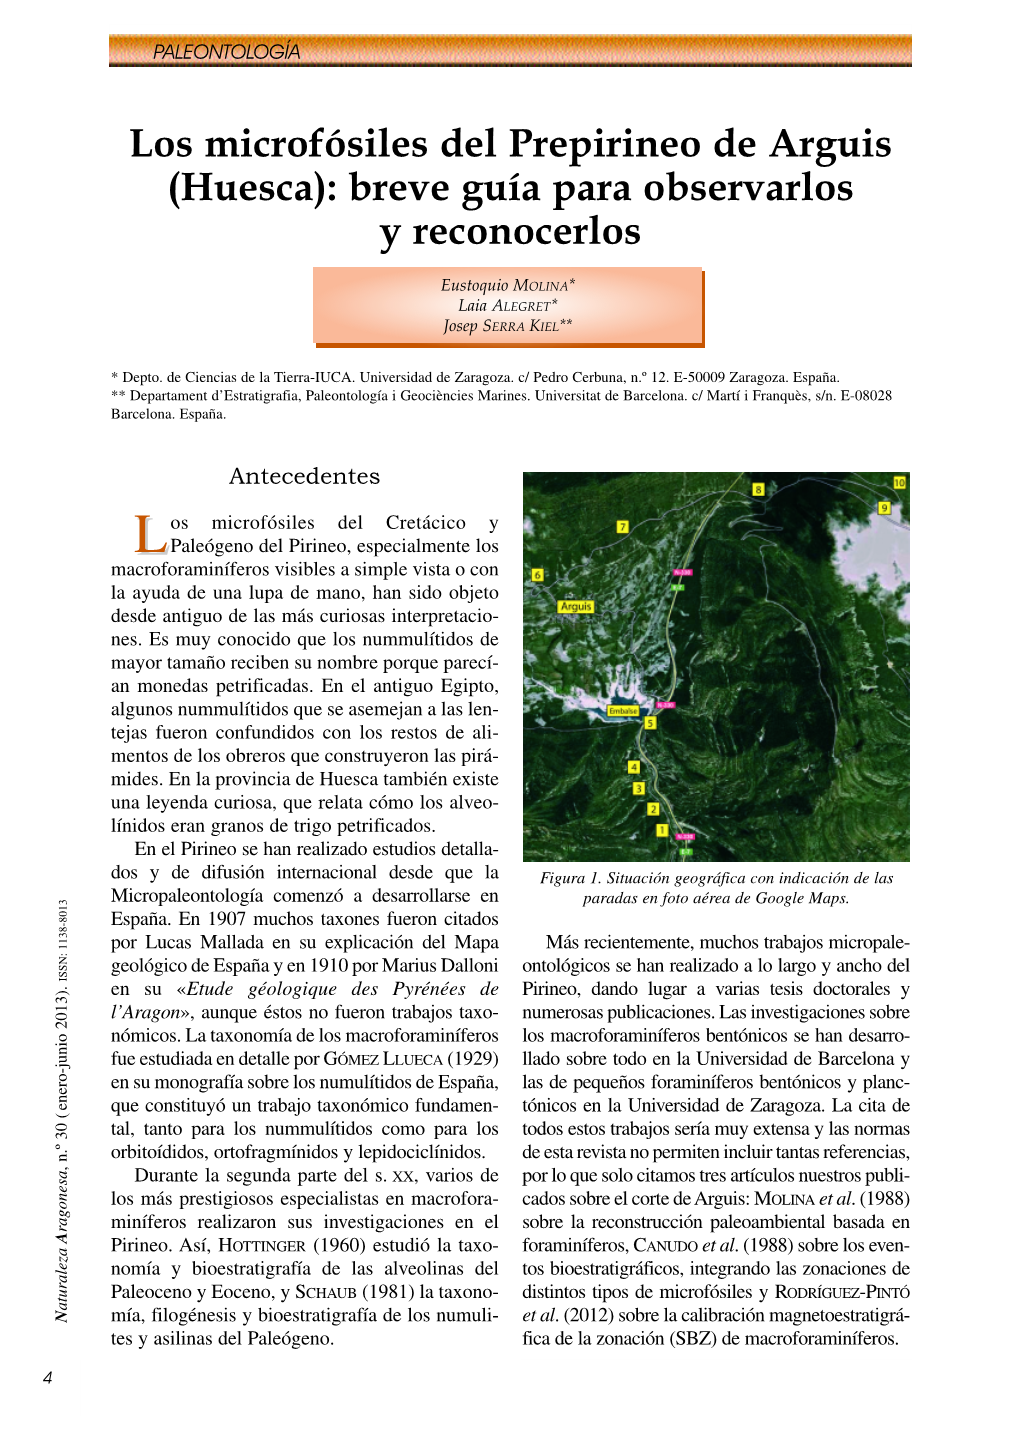 Los Microfósiles Del Prepirineo De Arguis (Huesca): Breve Guía Para Observarlos Y Reconocerlos